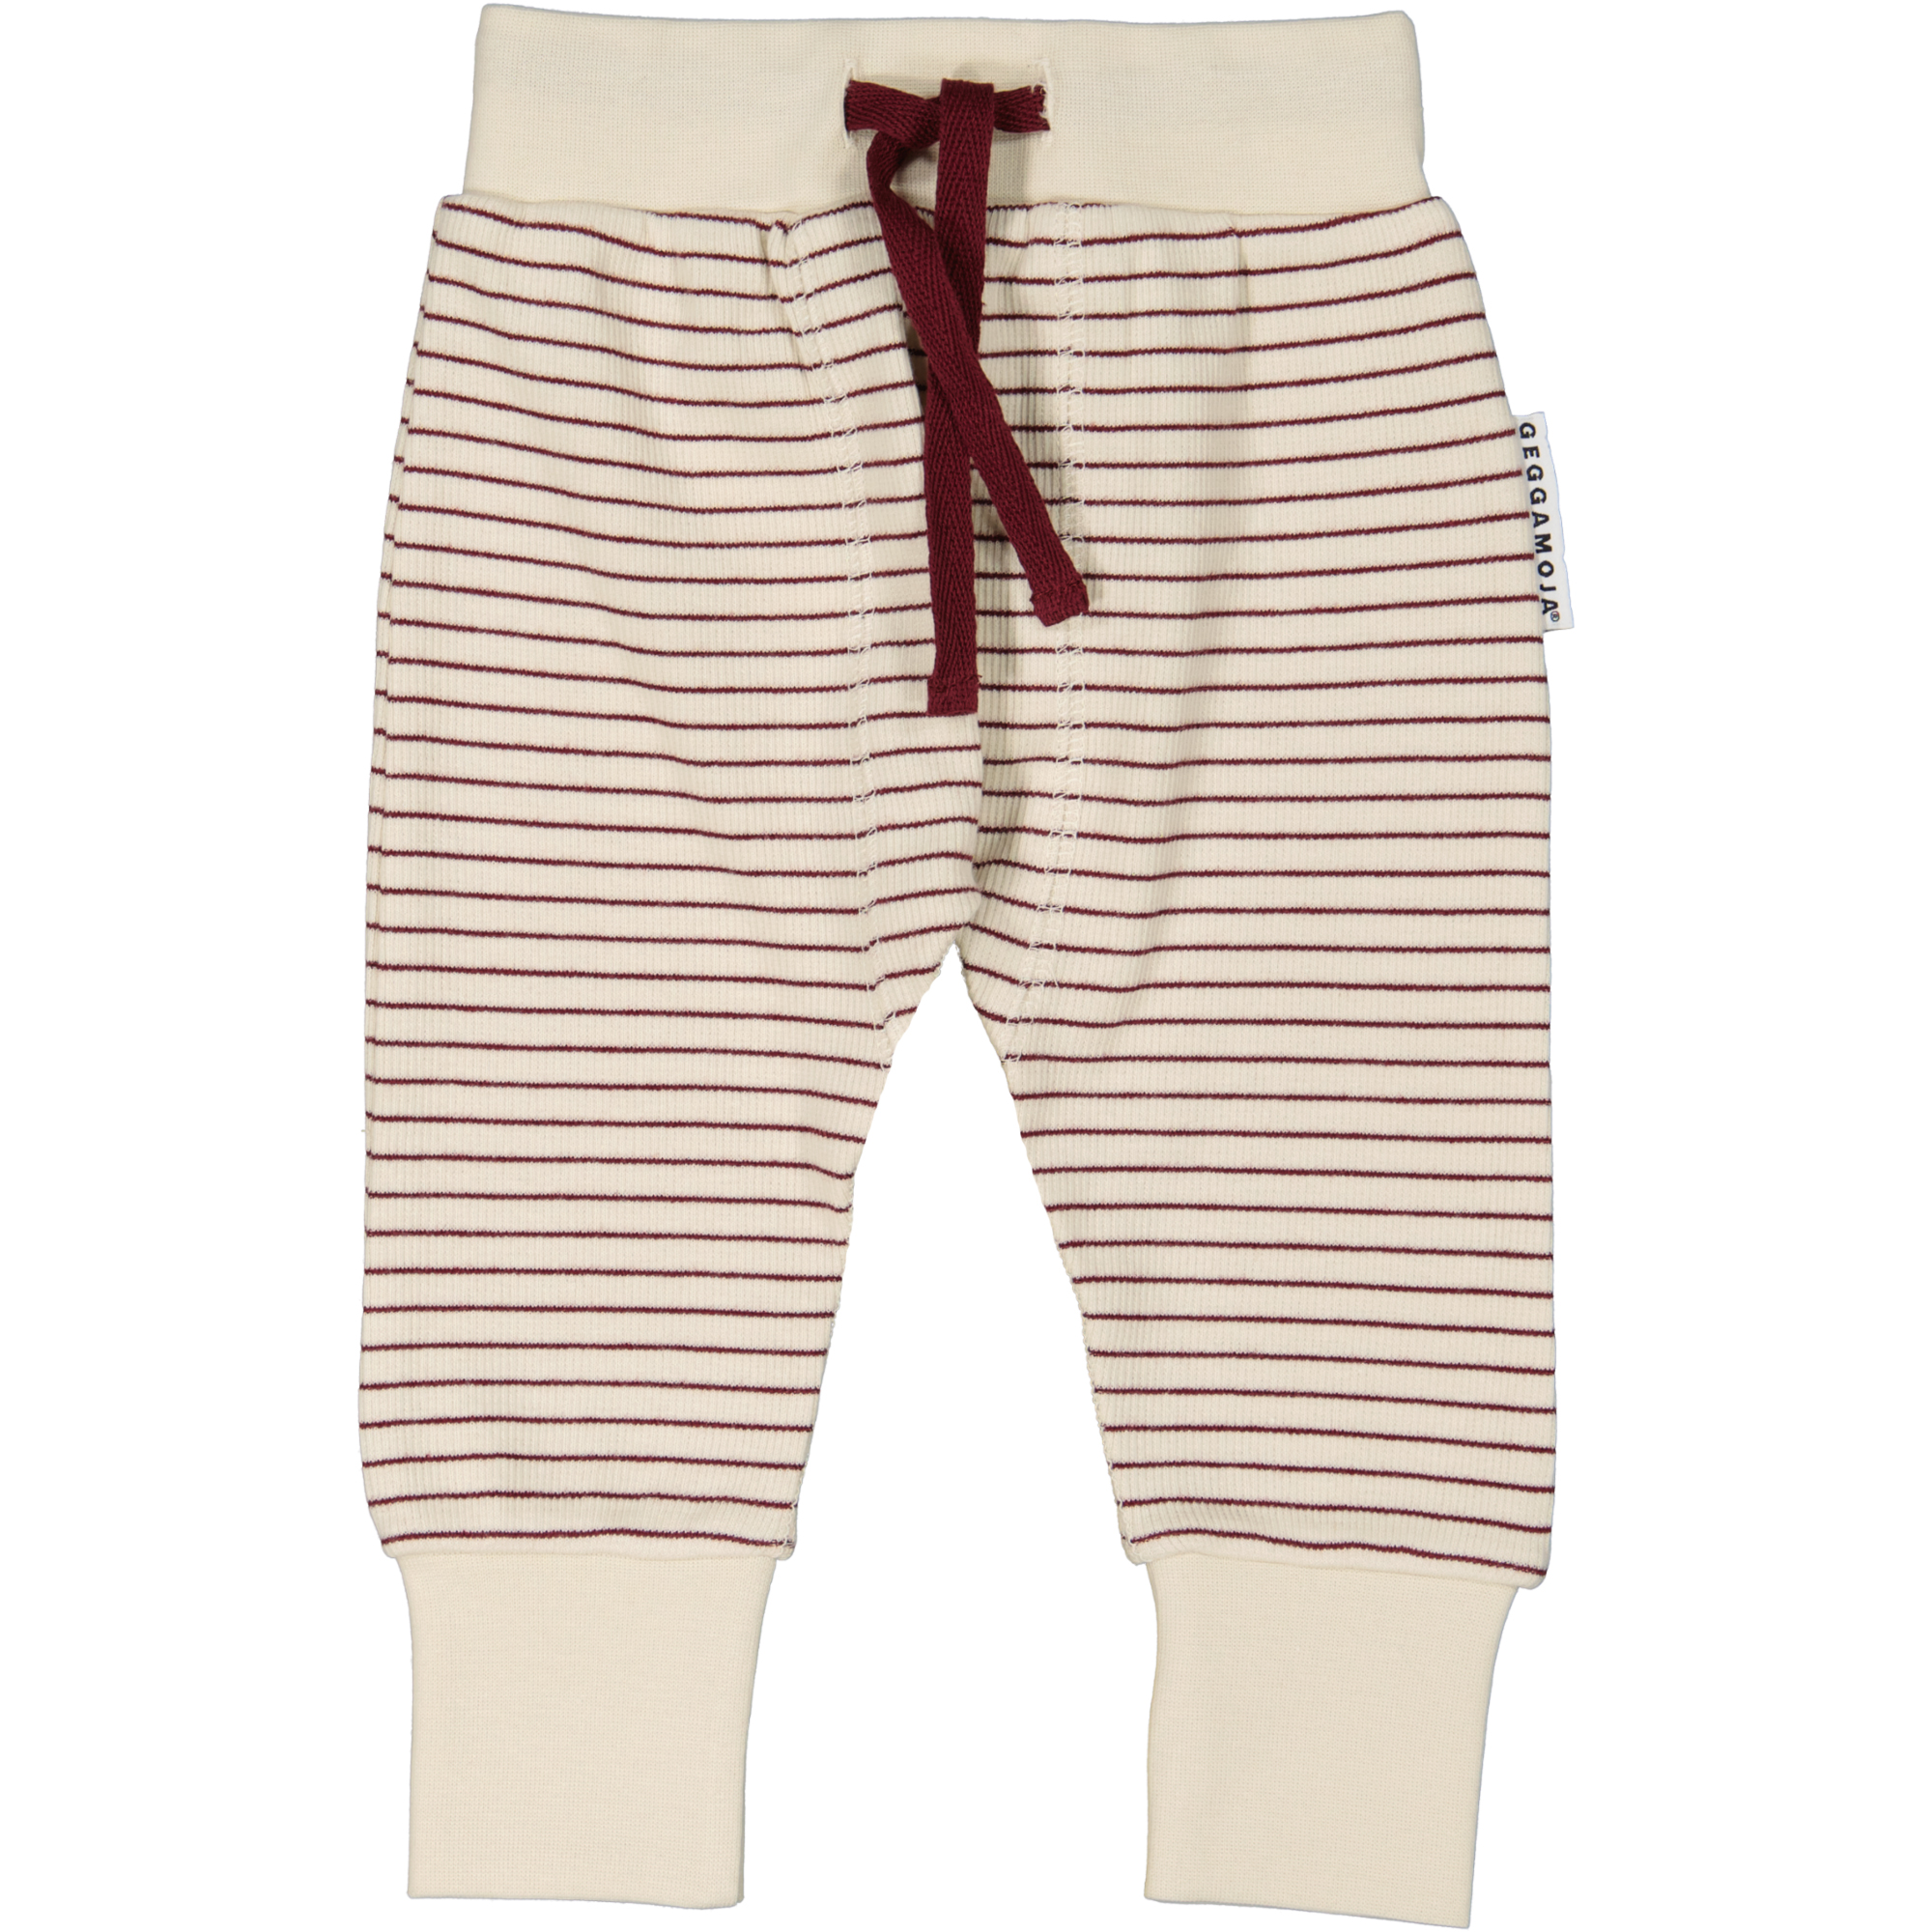 Vauvan housut Burgundy stripe